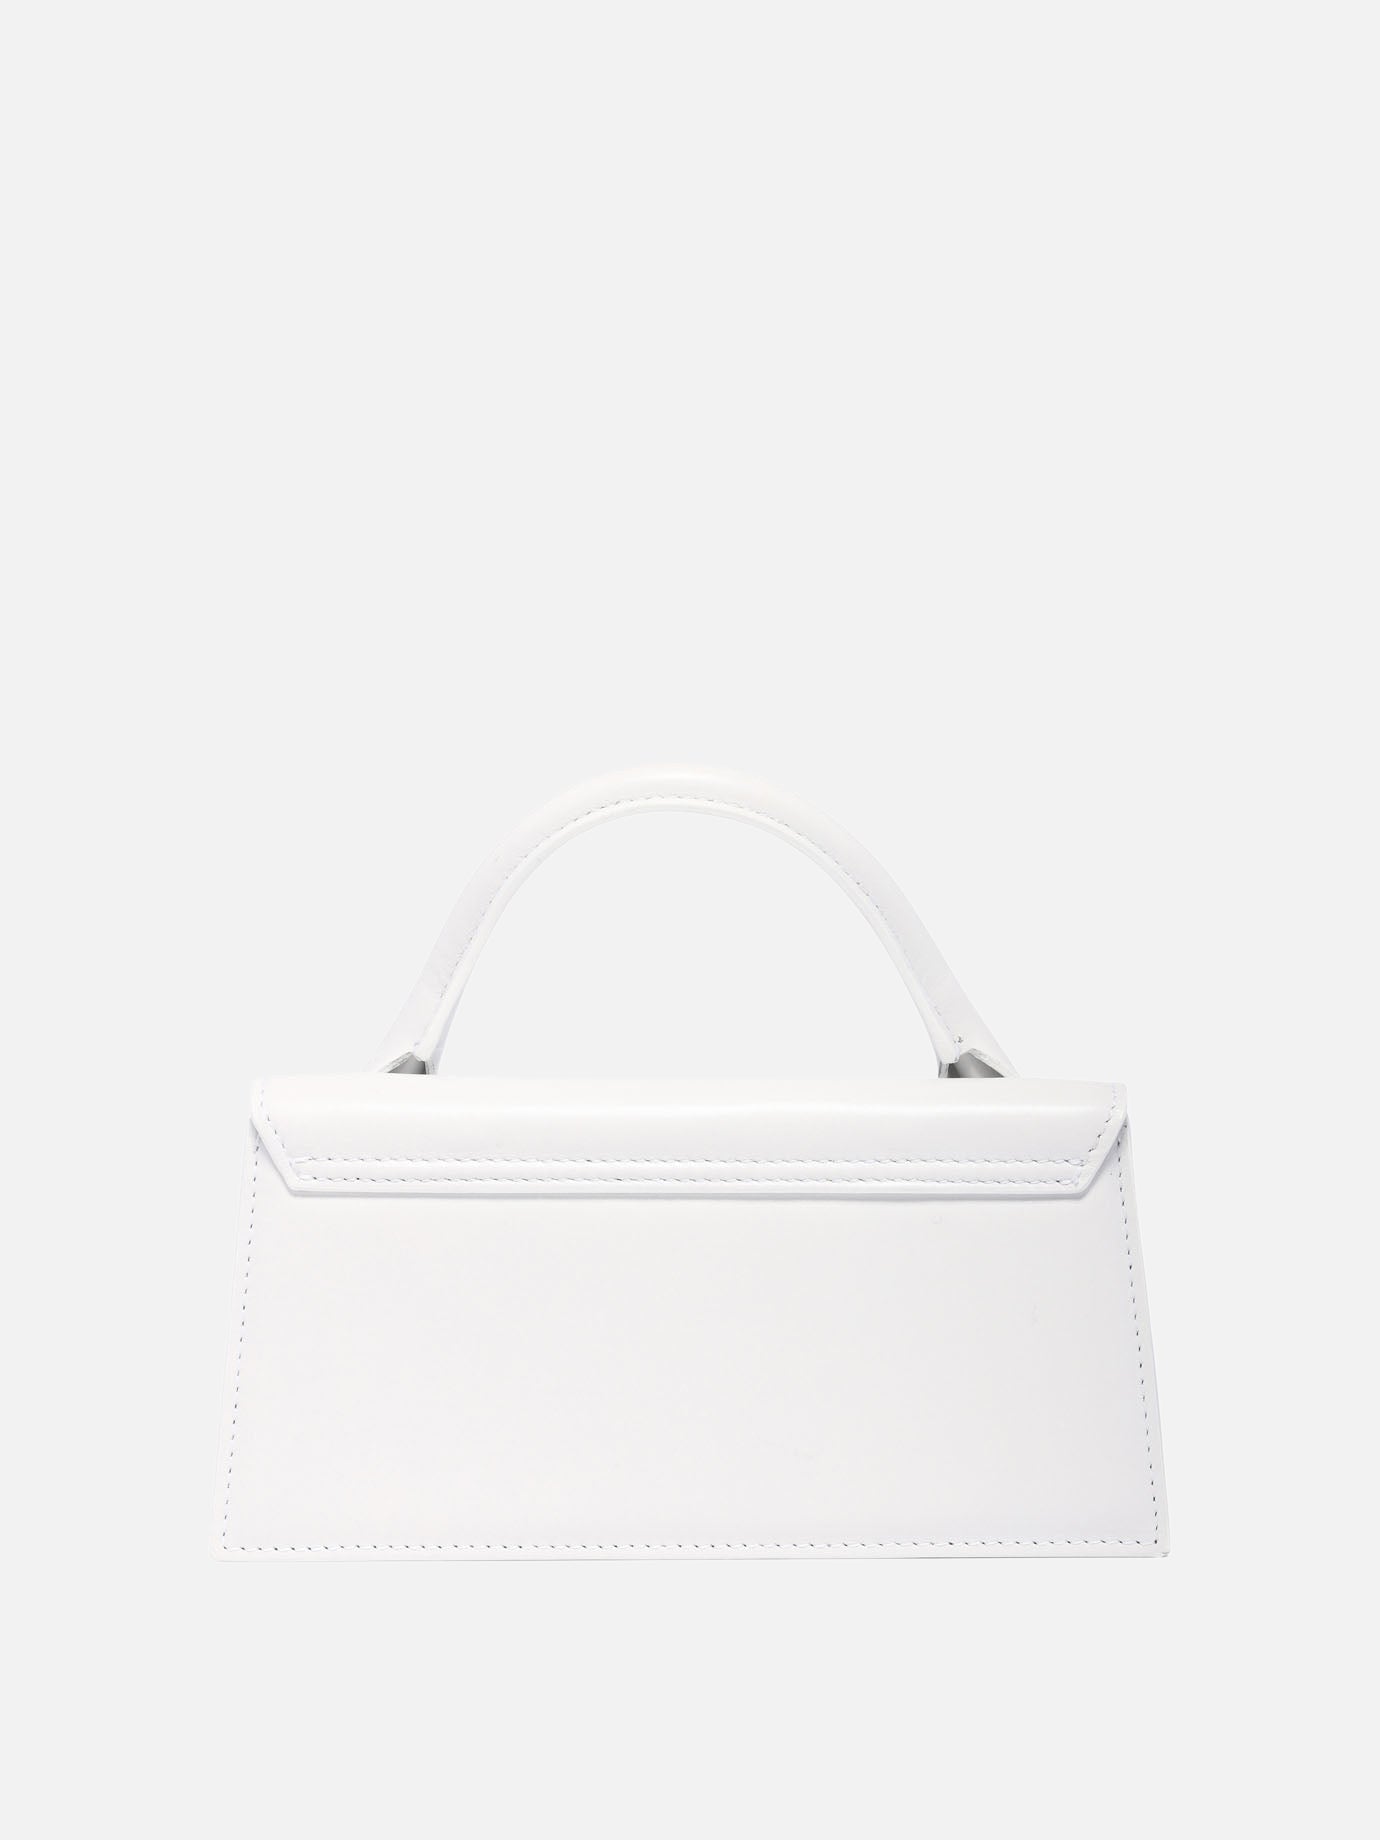 "Le Chiquito long" handbag